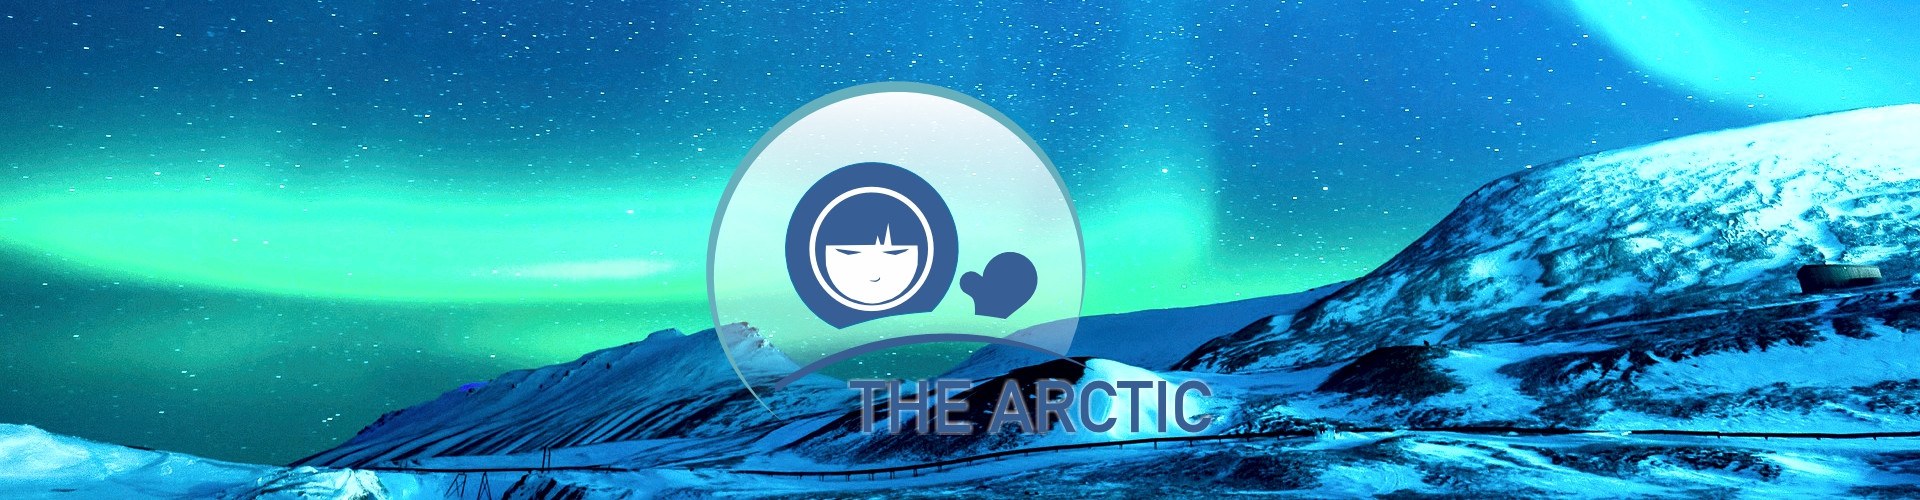 Arctic Portlet - Aurora Borealis over arctic landscape